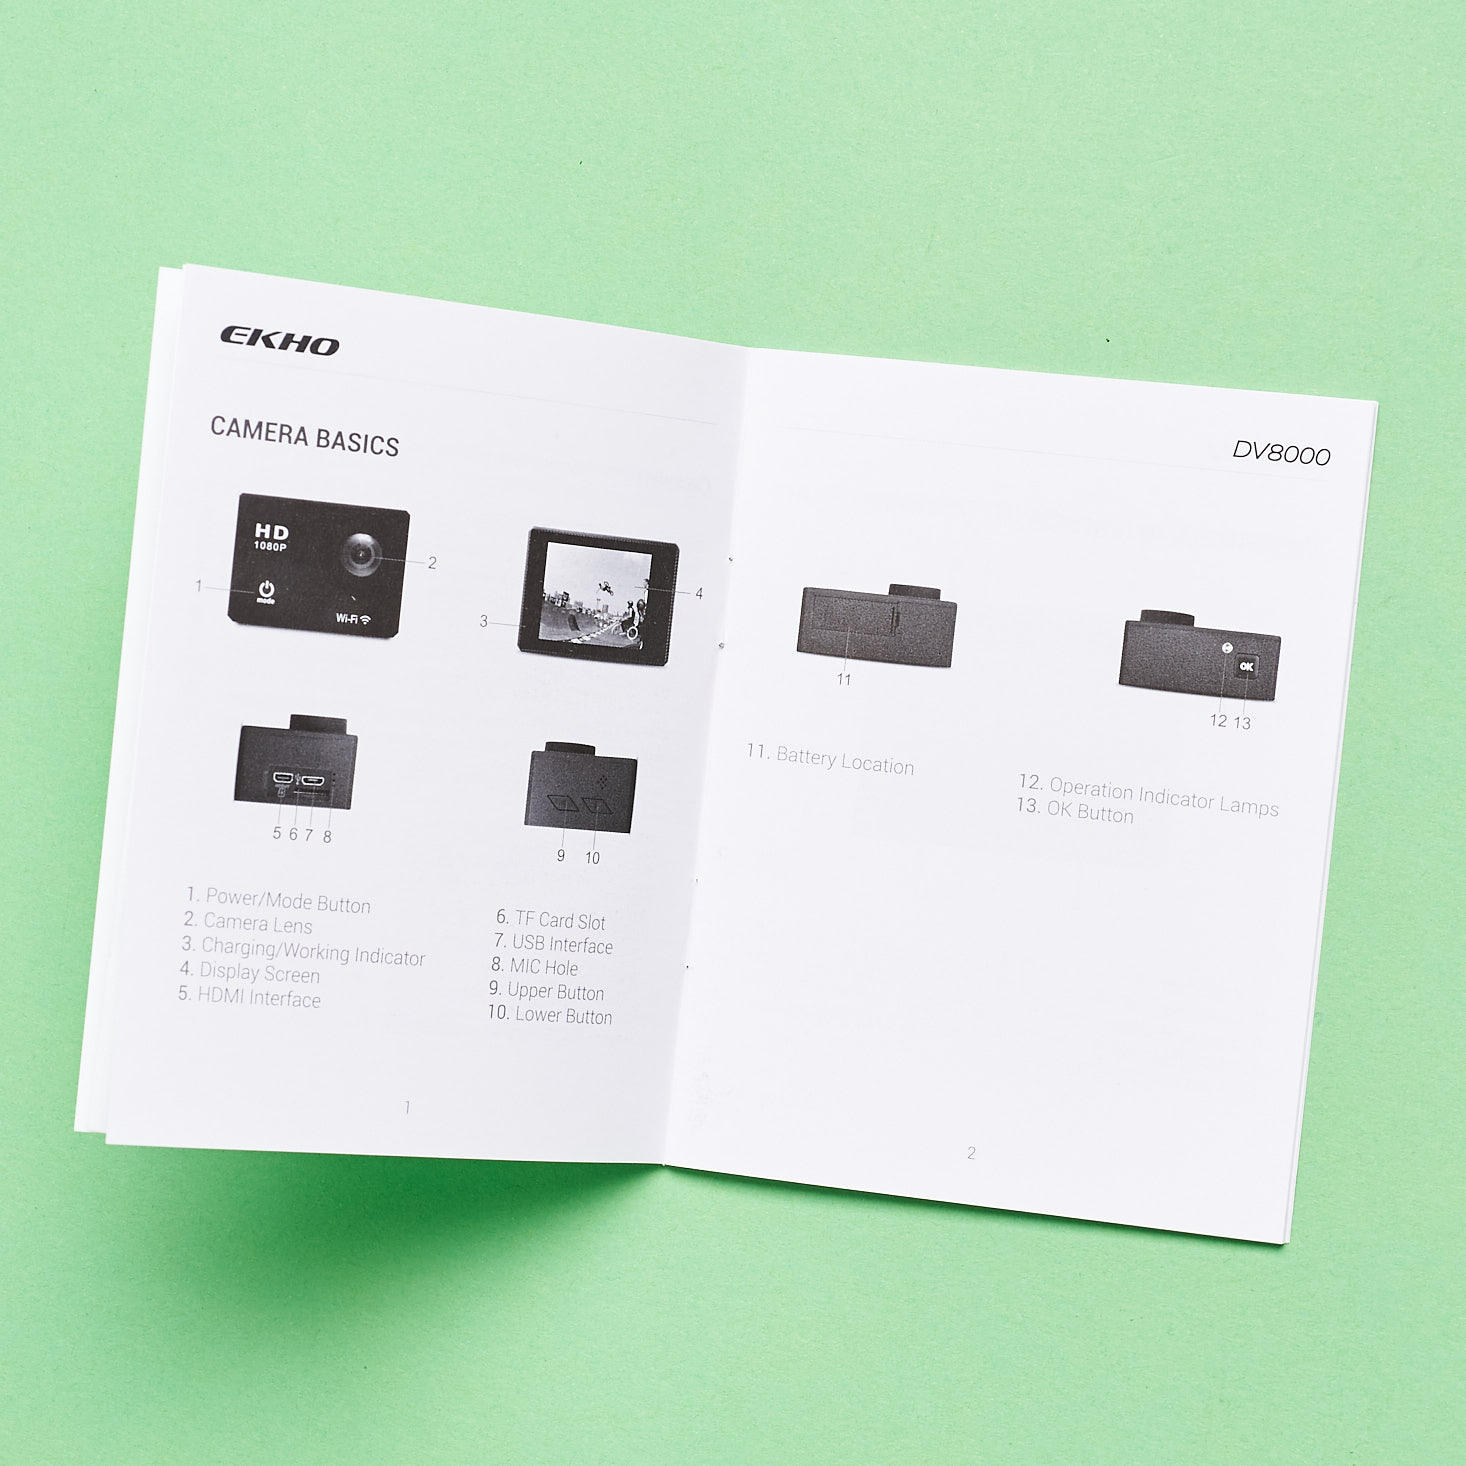 Camera Basics page of manual